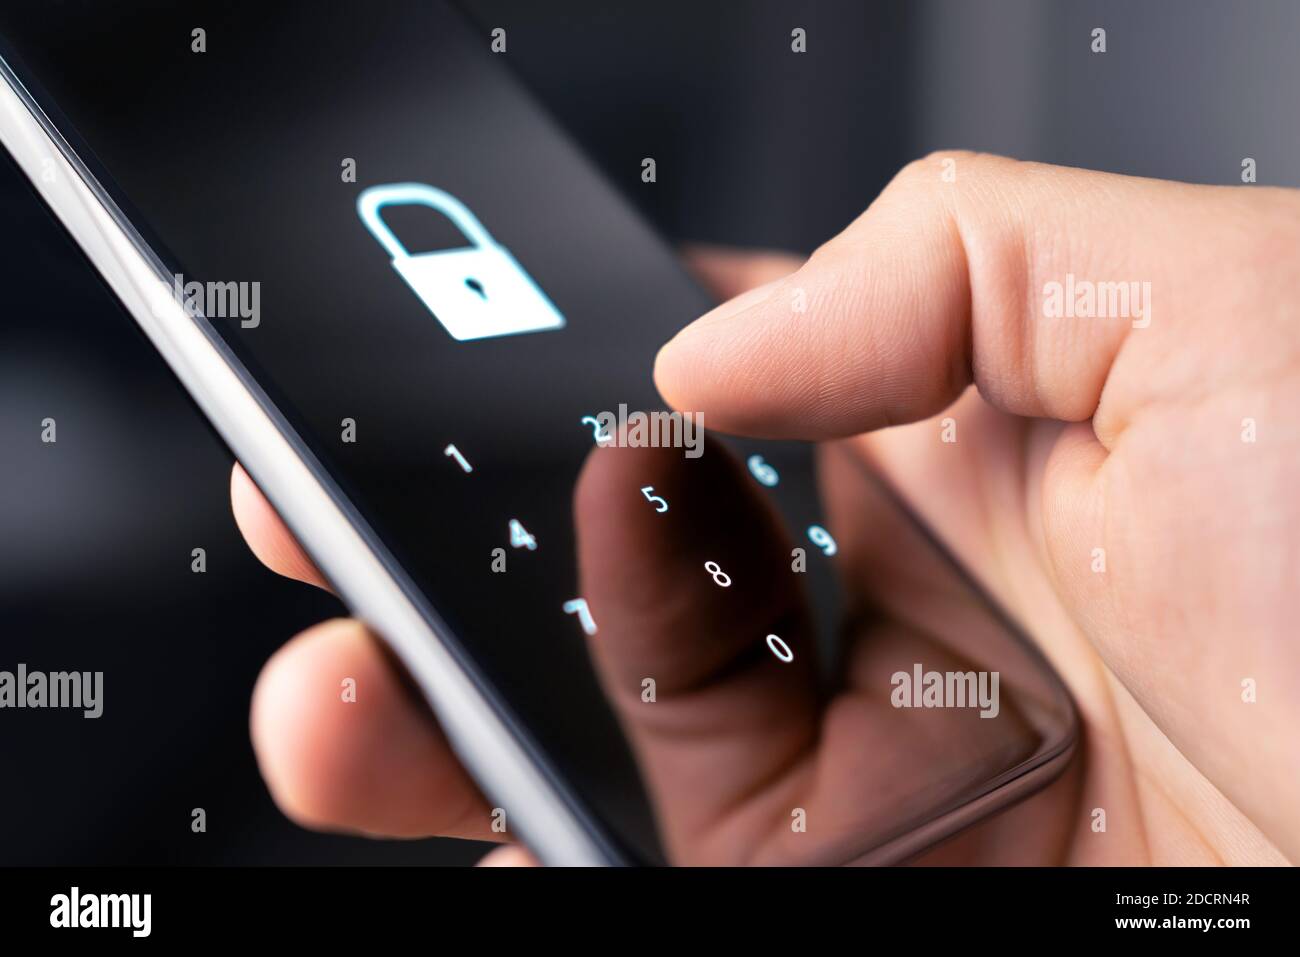 Sicherheitscode, Passwort oder Sperre für Mobiltelefone für persönliche Online-Privatsphäre und -Überprüfung. 2FA (zwei-Faktor-Authentifizierung) und Passcode für Daten. Stockfoto